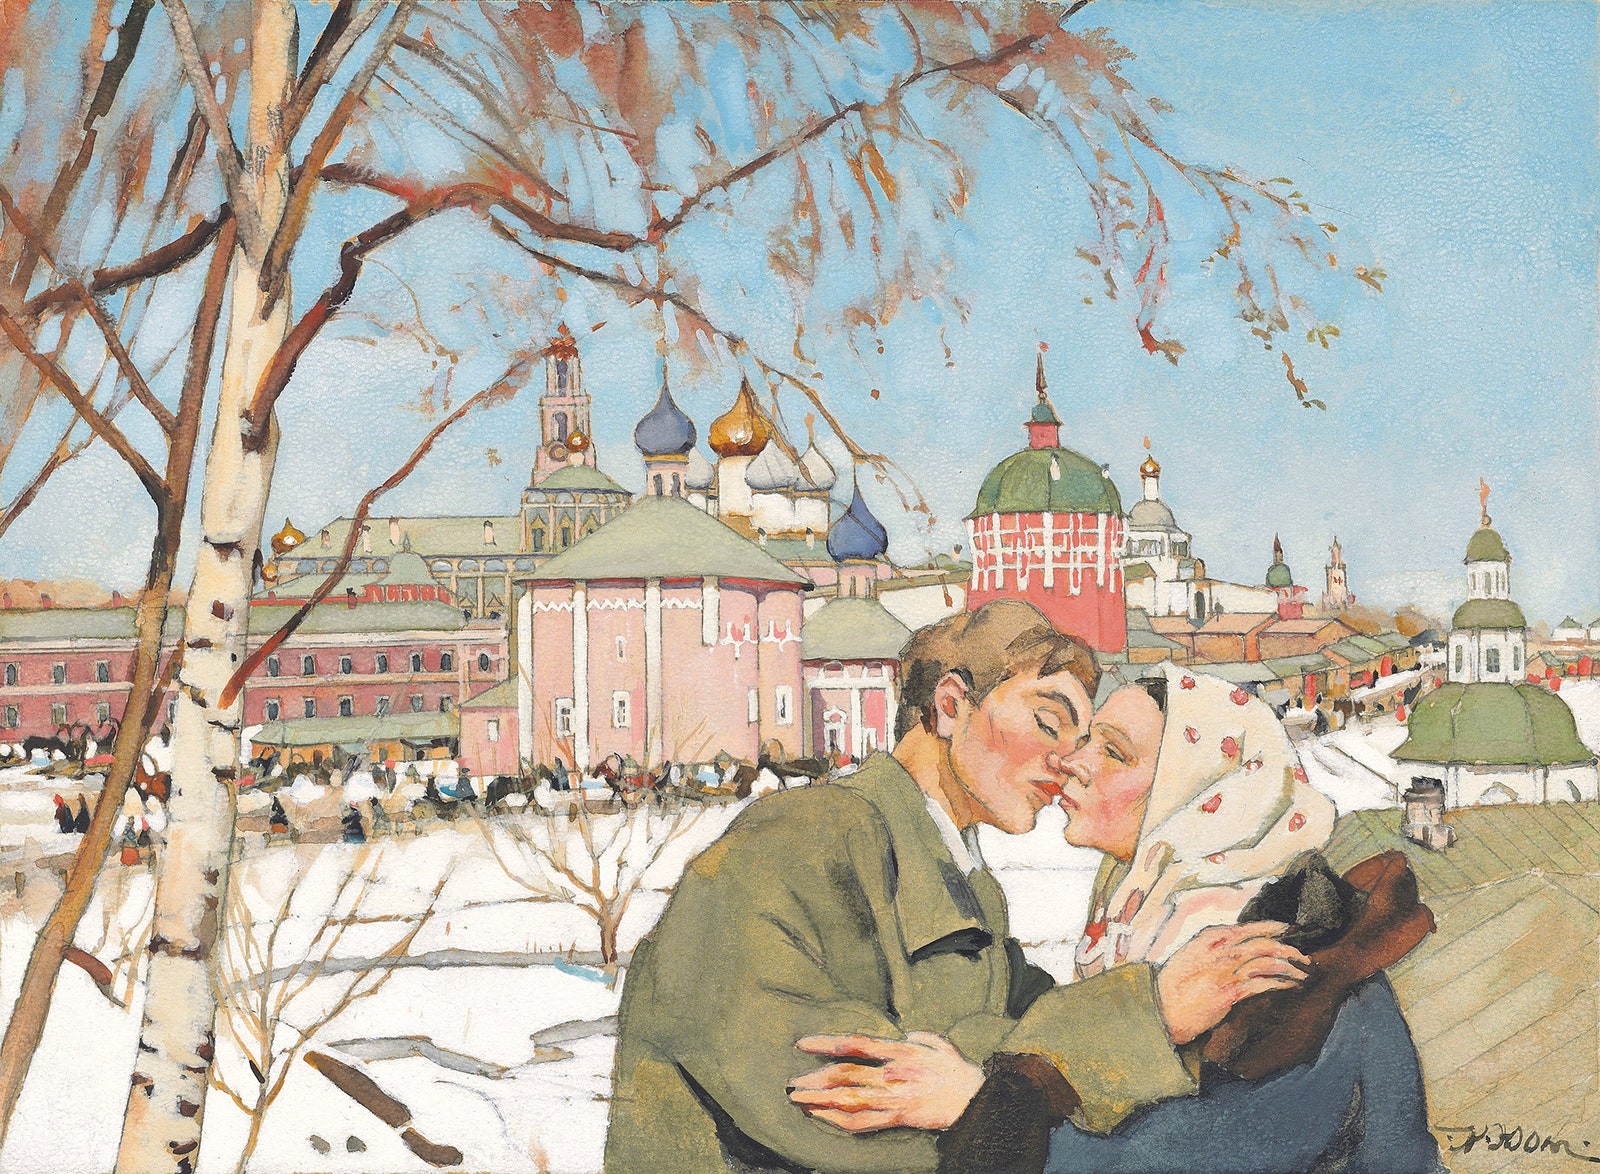 Константин Юон. A couple embracing in the snow.